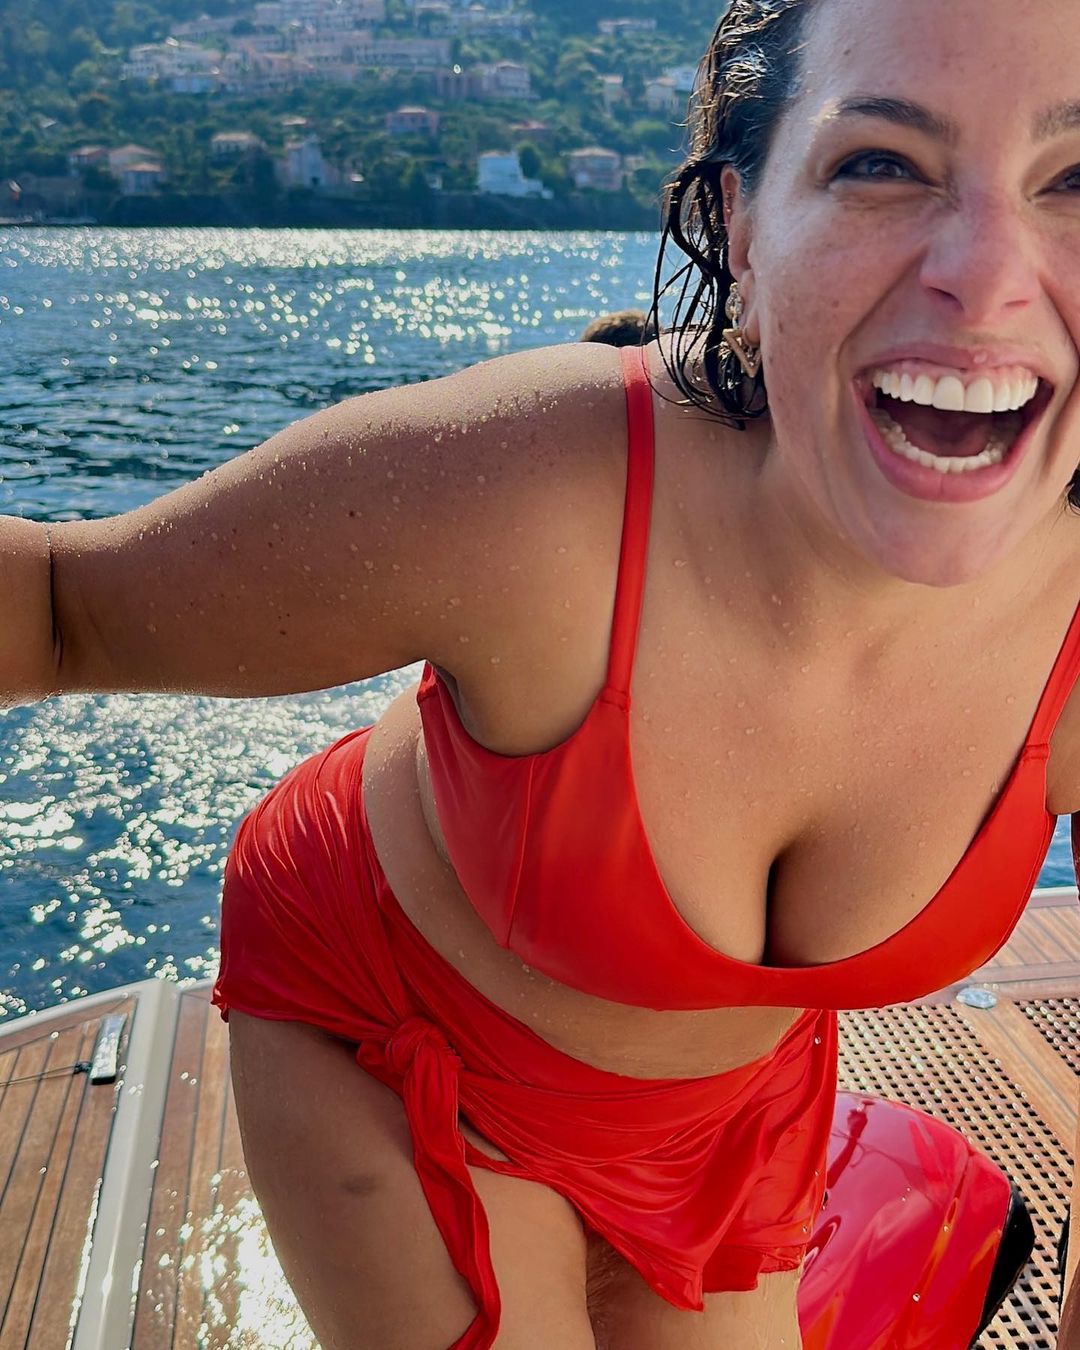 Ashley Graham’s Boat Vacation! - Photo 4